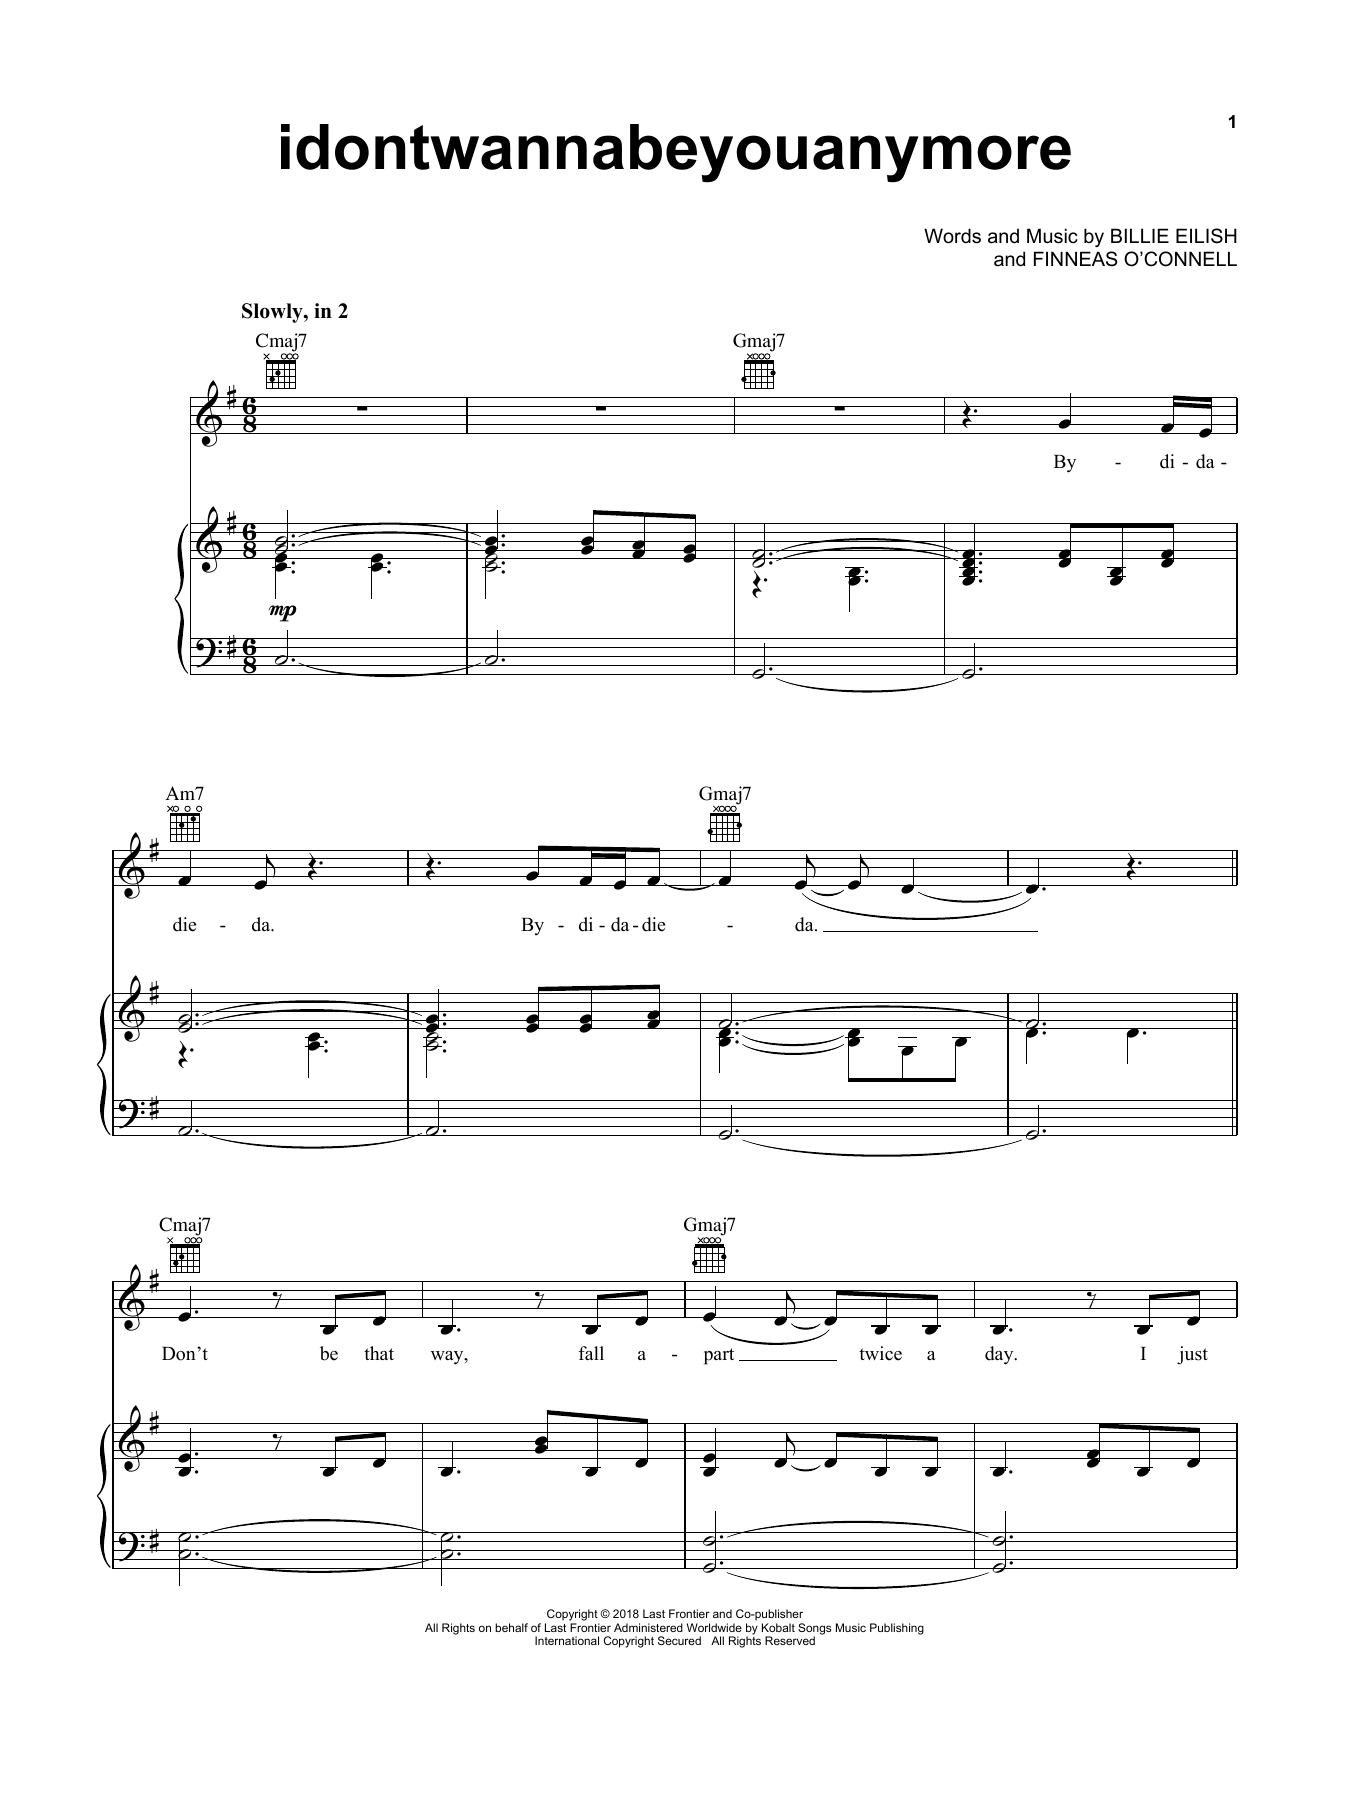 Billie Eilish idontwannabeyouanymore Sheet Music Notes & Chords for Ukulele - Download or Print PDF